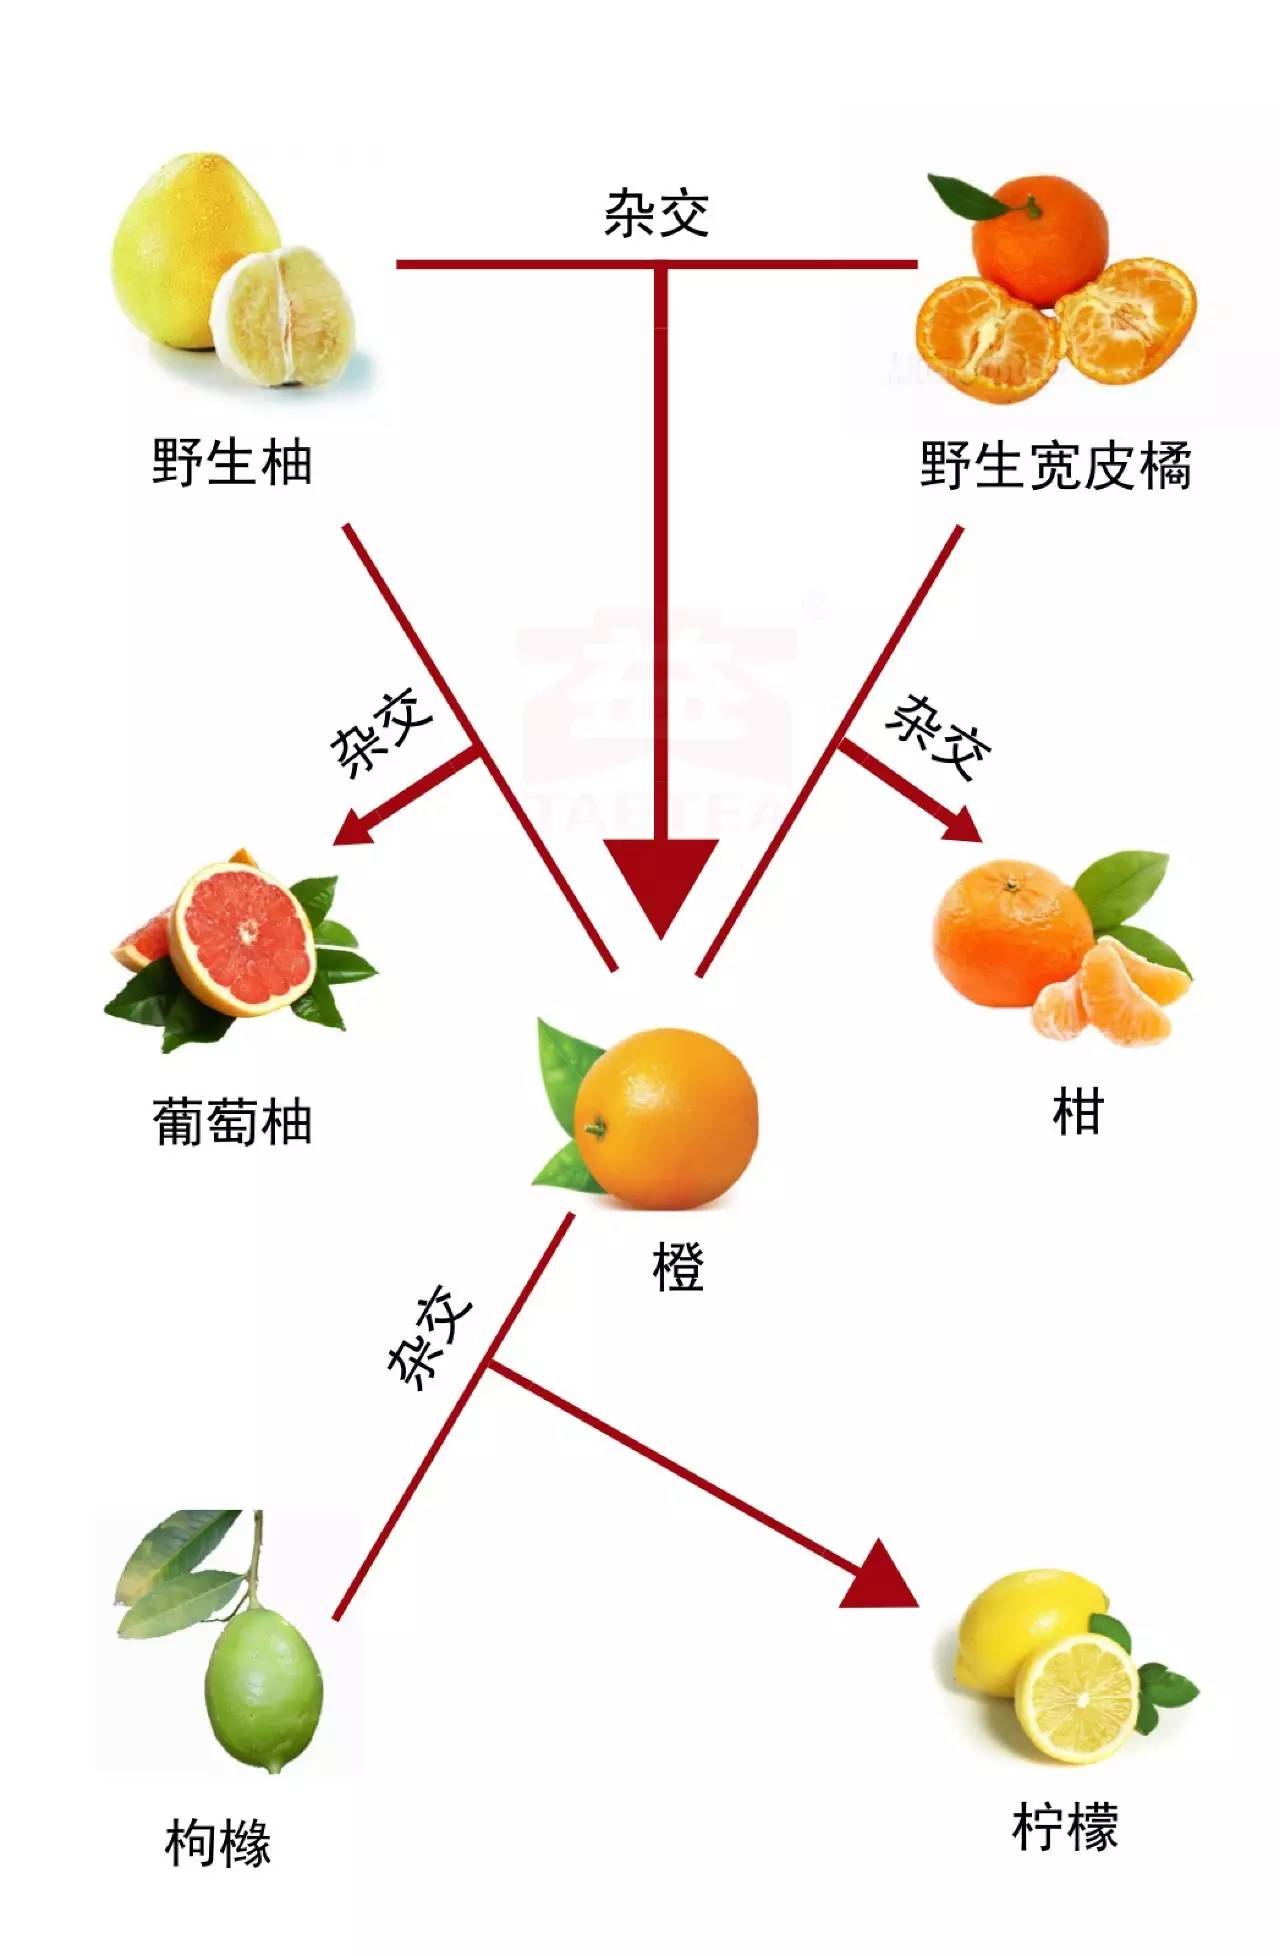 再来看一张图:柑橘和枳同科不同属,关系算老表,跟其它则算是堂兄弟